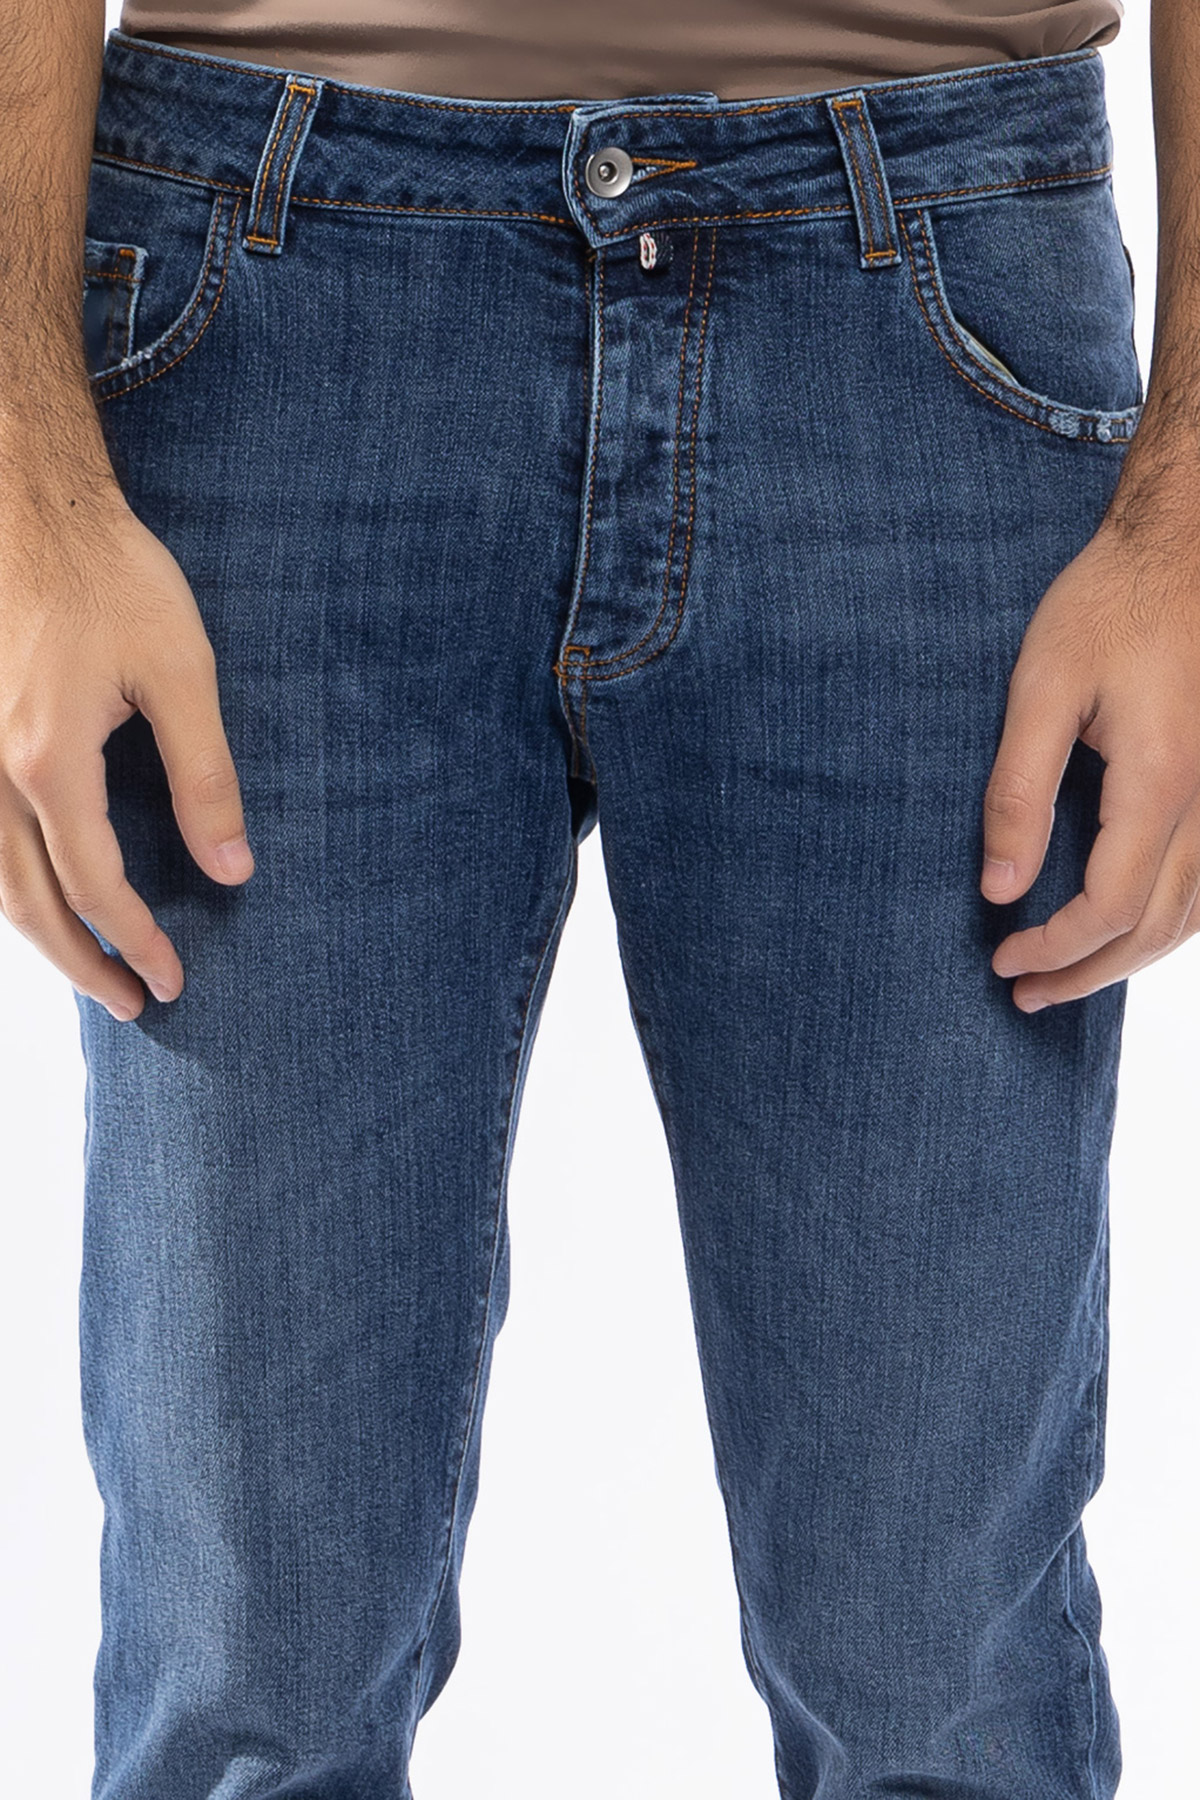 Jeans da uomo con strappi lavaggio medio con leggere sabbiature bianche modello 5 tasche